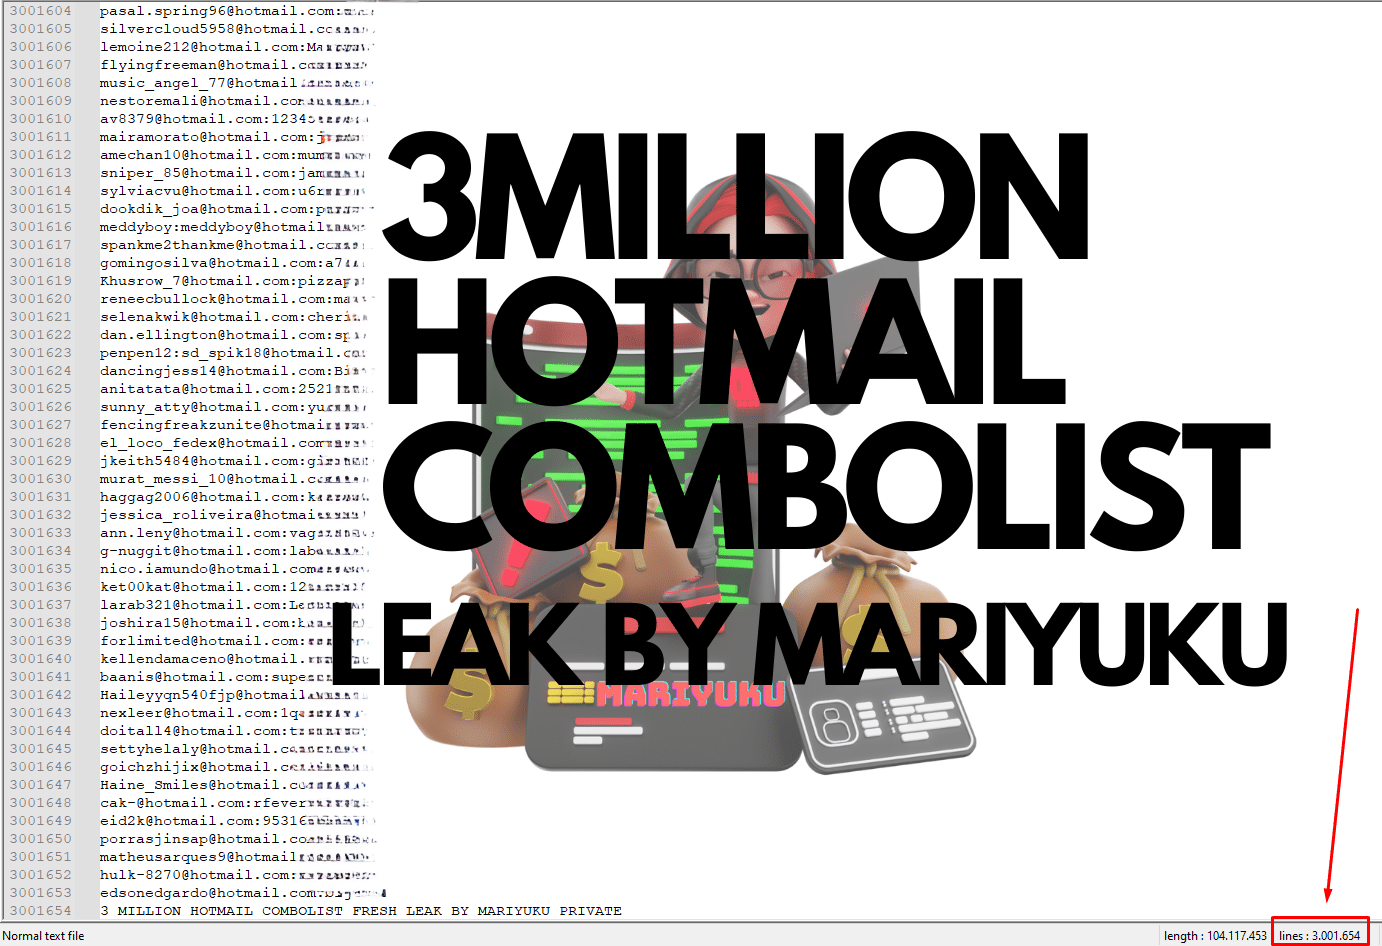 3MILLION HOTMAIL COMBOLIST 1